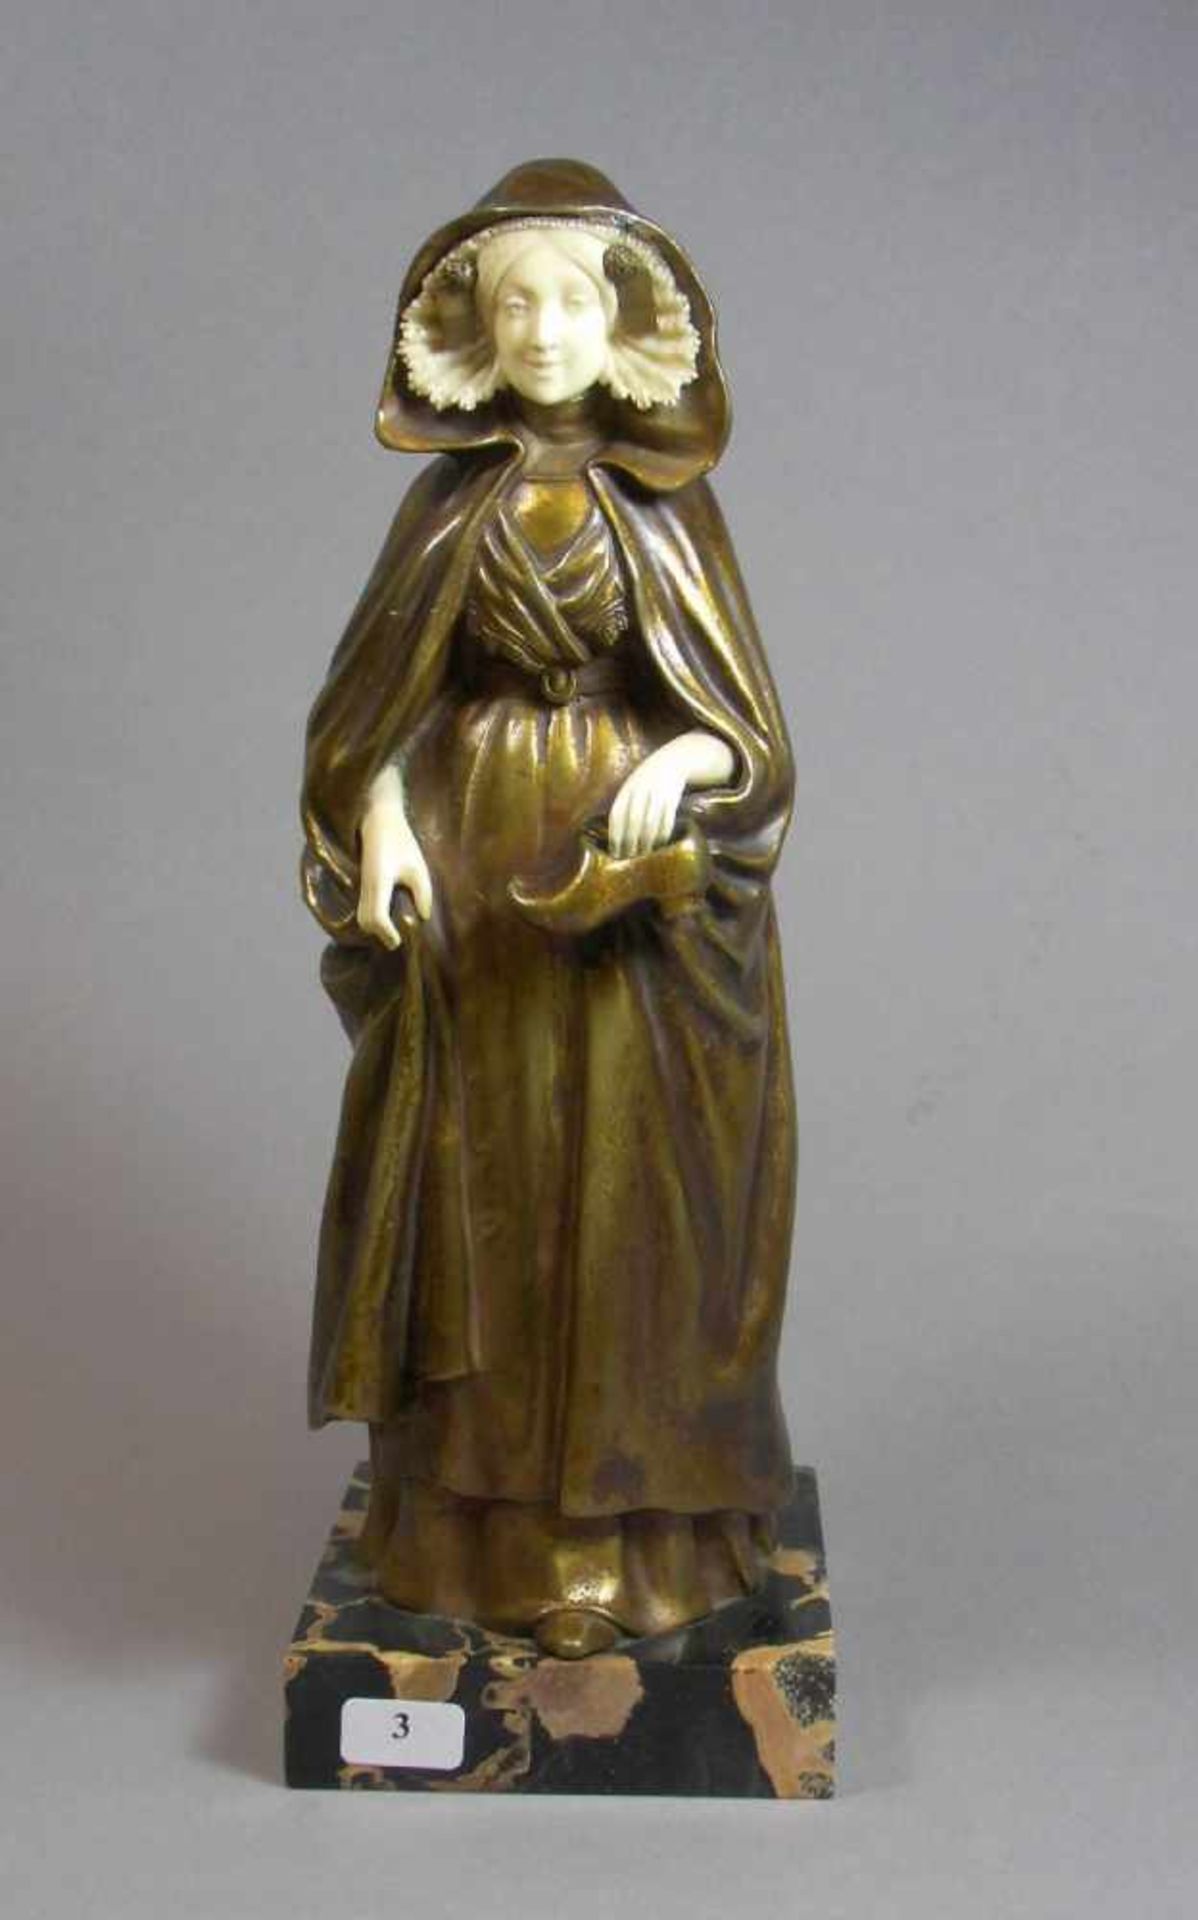 BERNOUD, EUGÈNE (französischer Bildhauer des 19./20. Jh.), Skulptur: "La marche silencieuse", Bronze